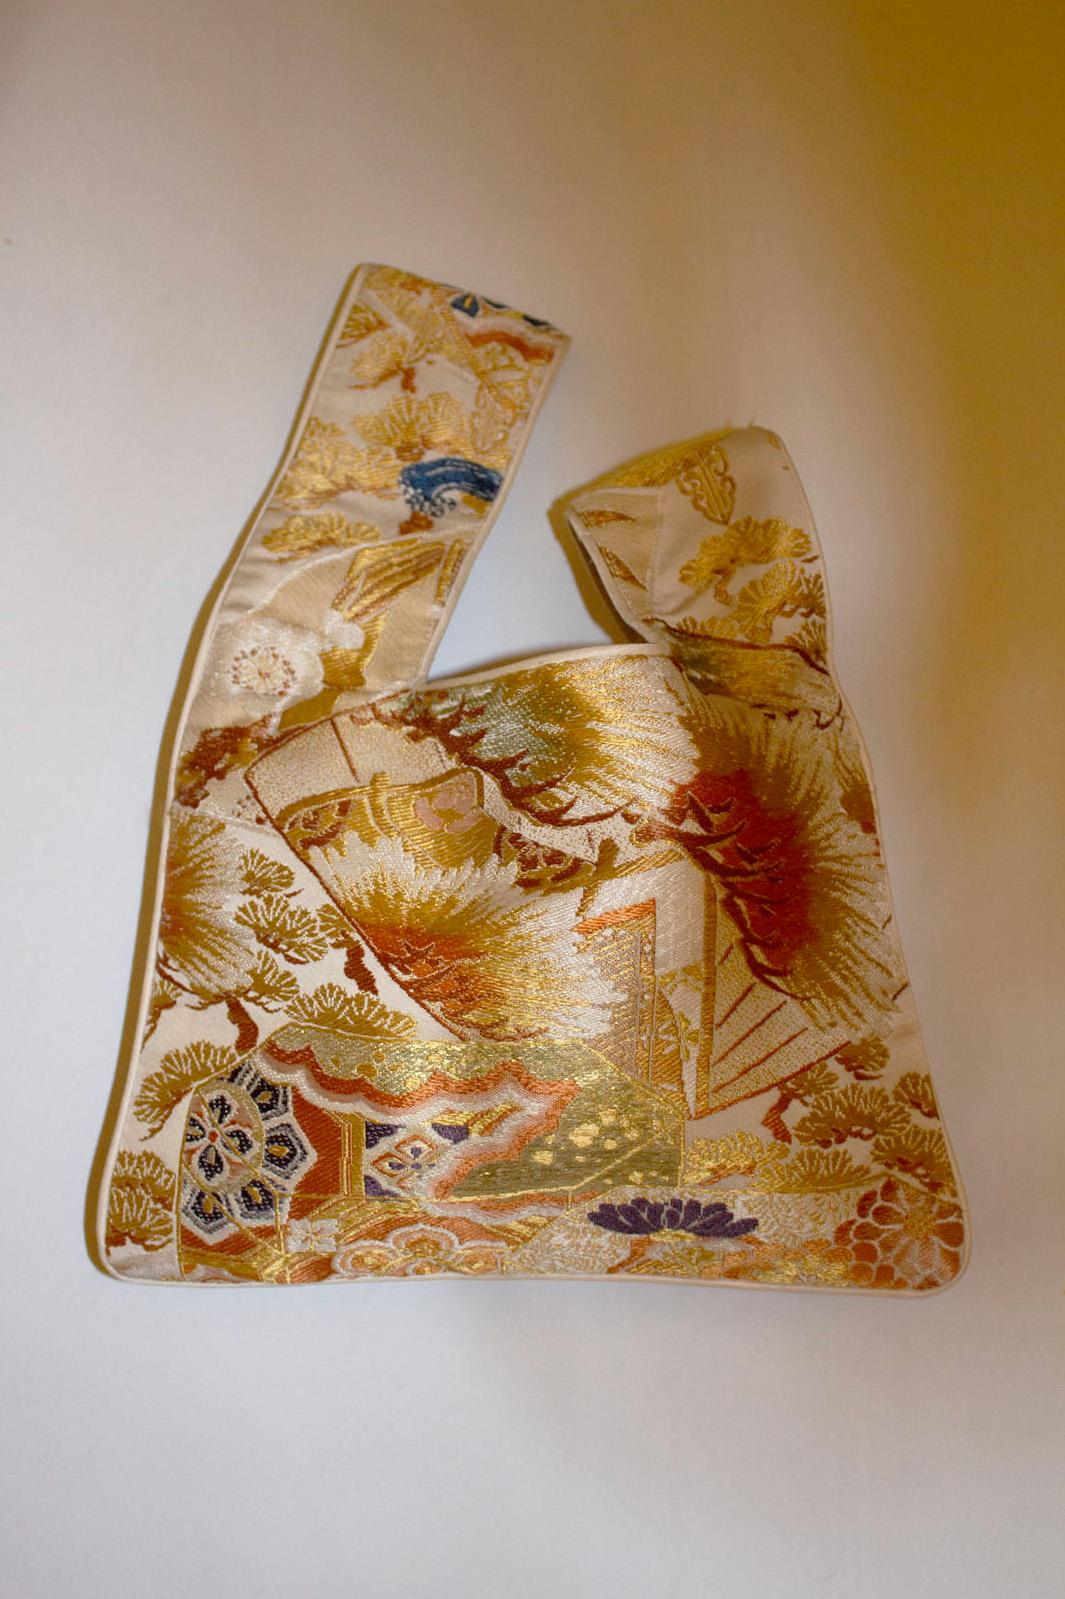 Un joli sac doré, orange et violet avec un liseré blanc, fabriqué à partir de ceintures obi anciennes et rares.
Les poignées se glissent l'une dans l'autre. Le sac est doublé. Dimensions : largeur 12'' x hauteur 9''
